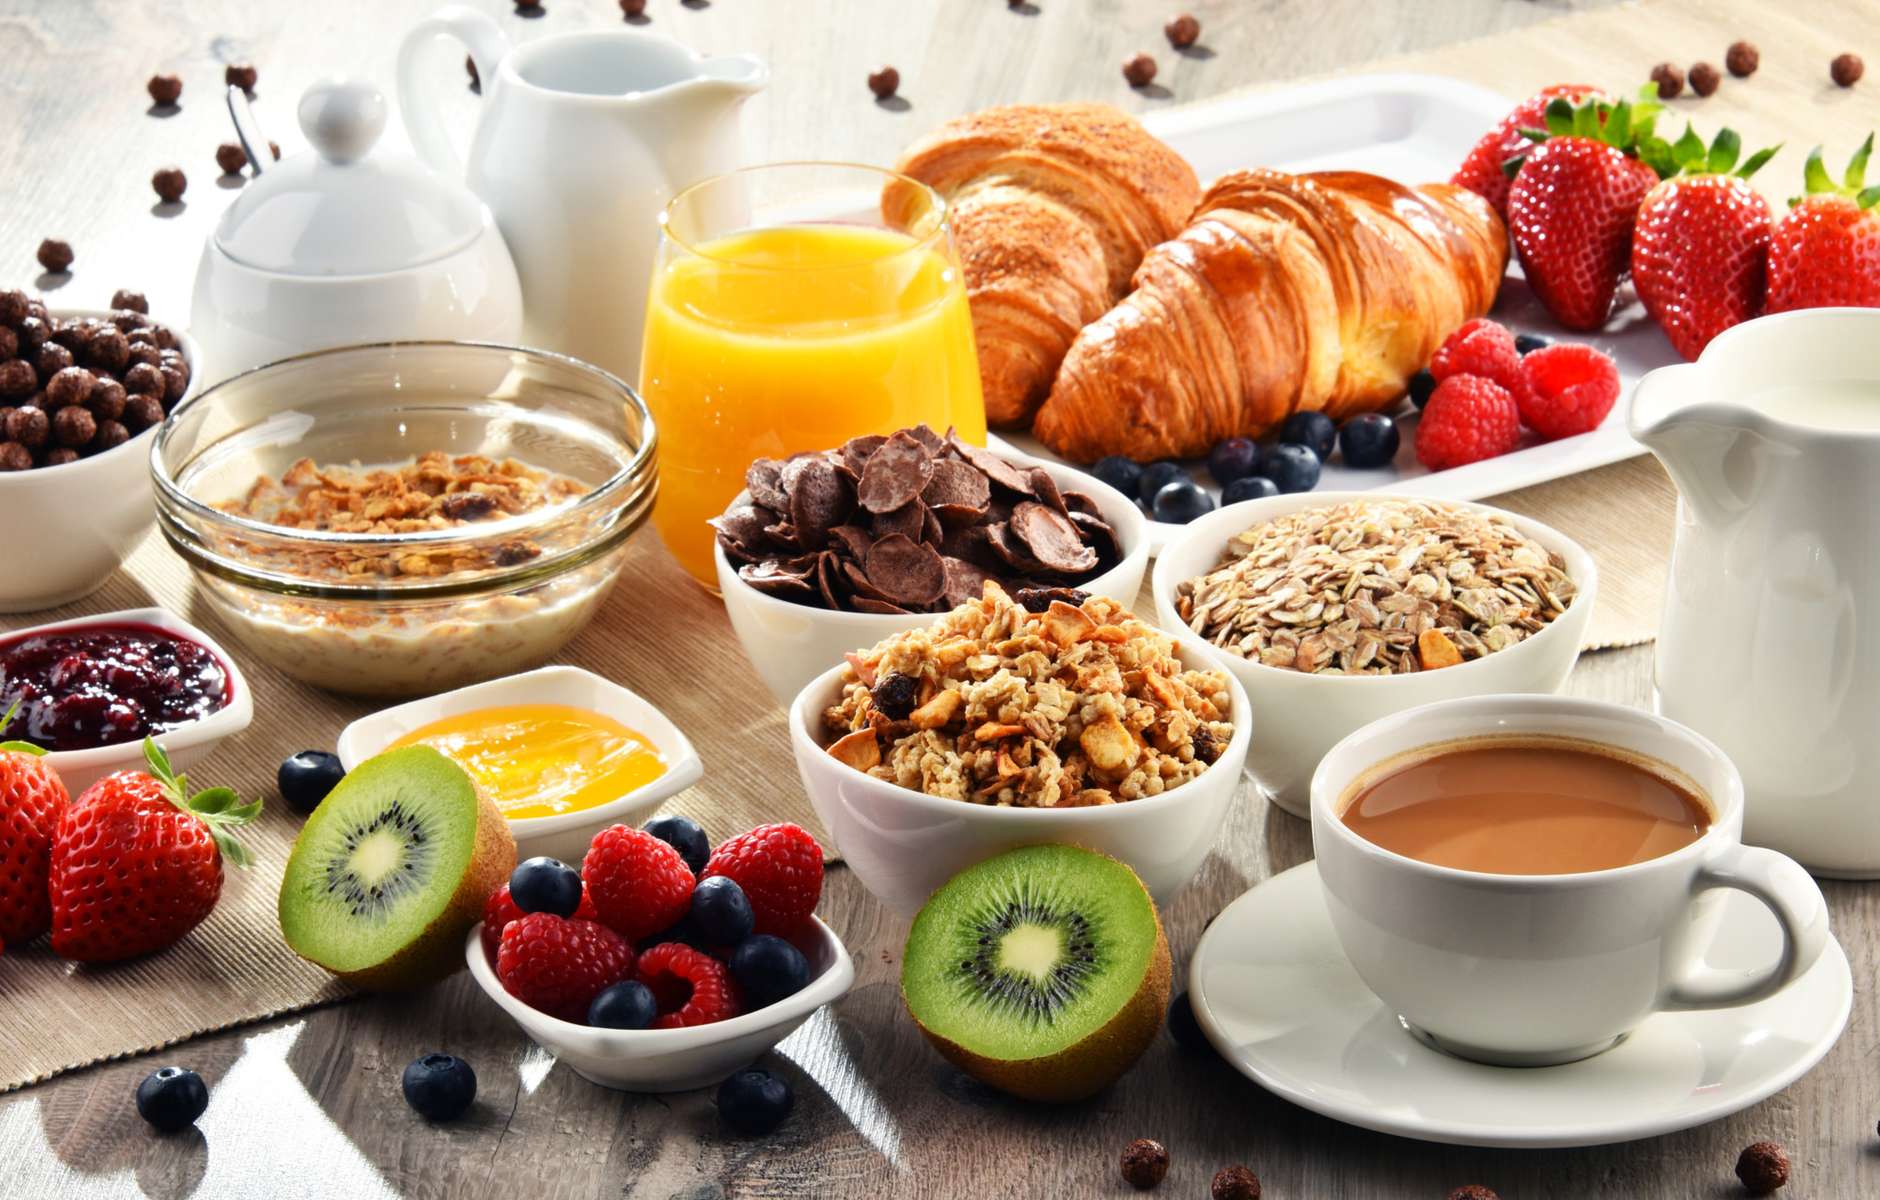 Пить кофе на голодный желудок с утра. Добавки к завтраку. Пищеварение завтрак. Полноценный завтрак польза. Завтрак шведский стол в гостинице.